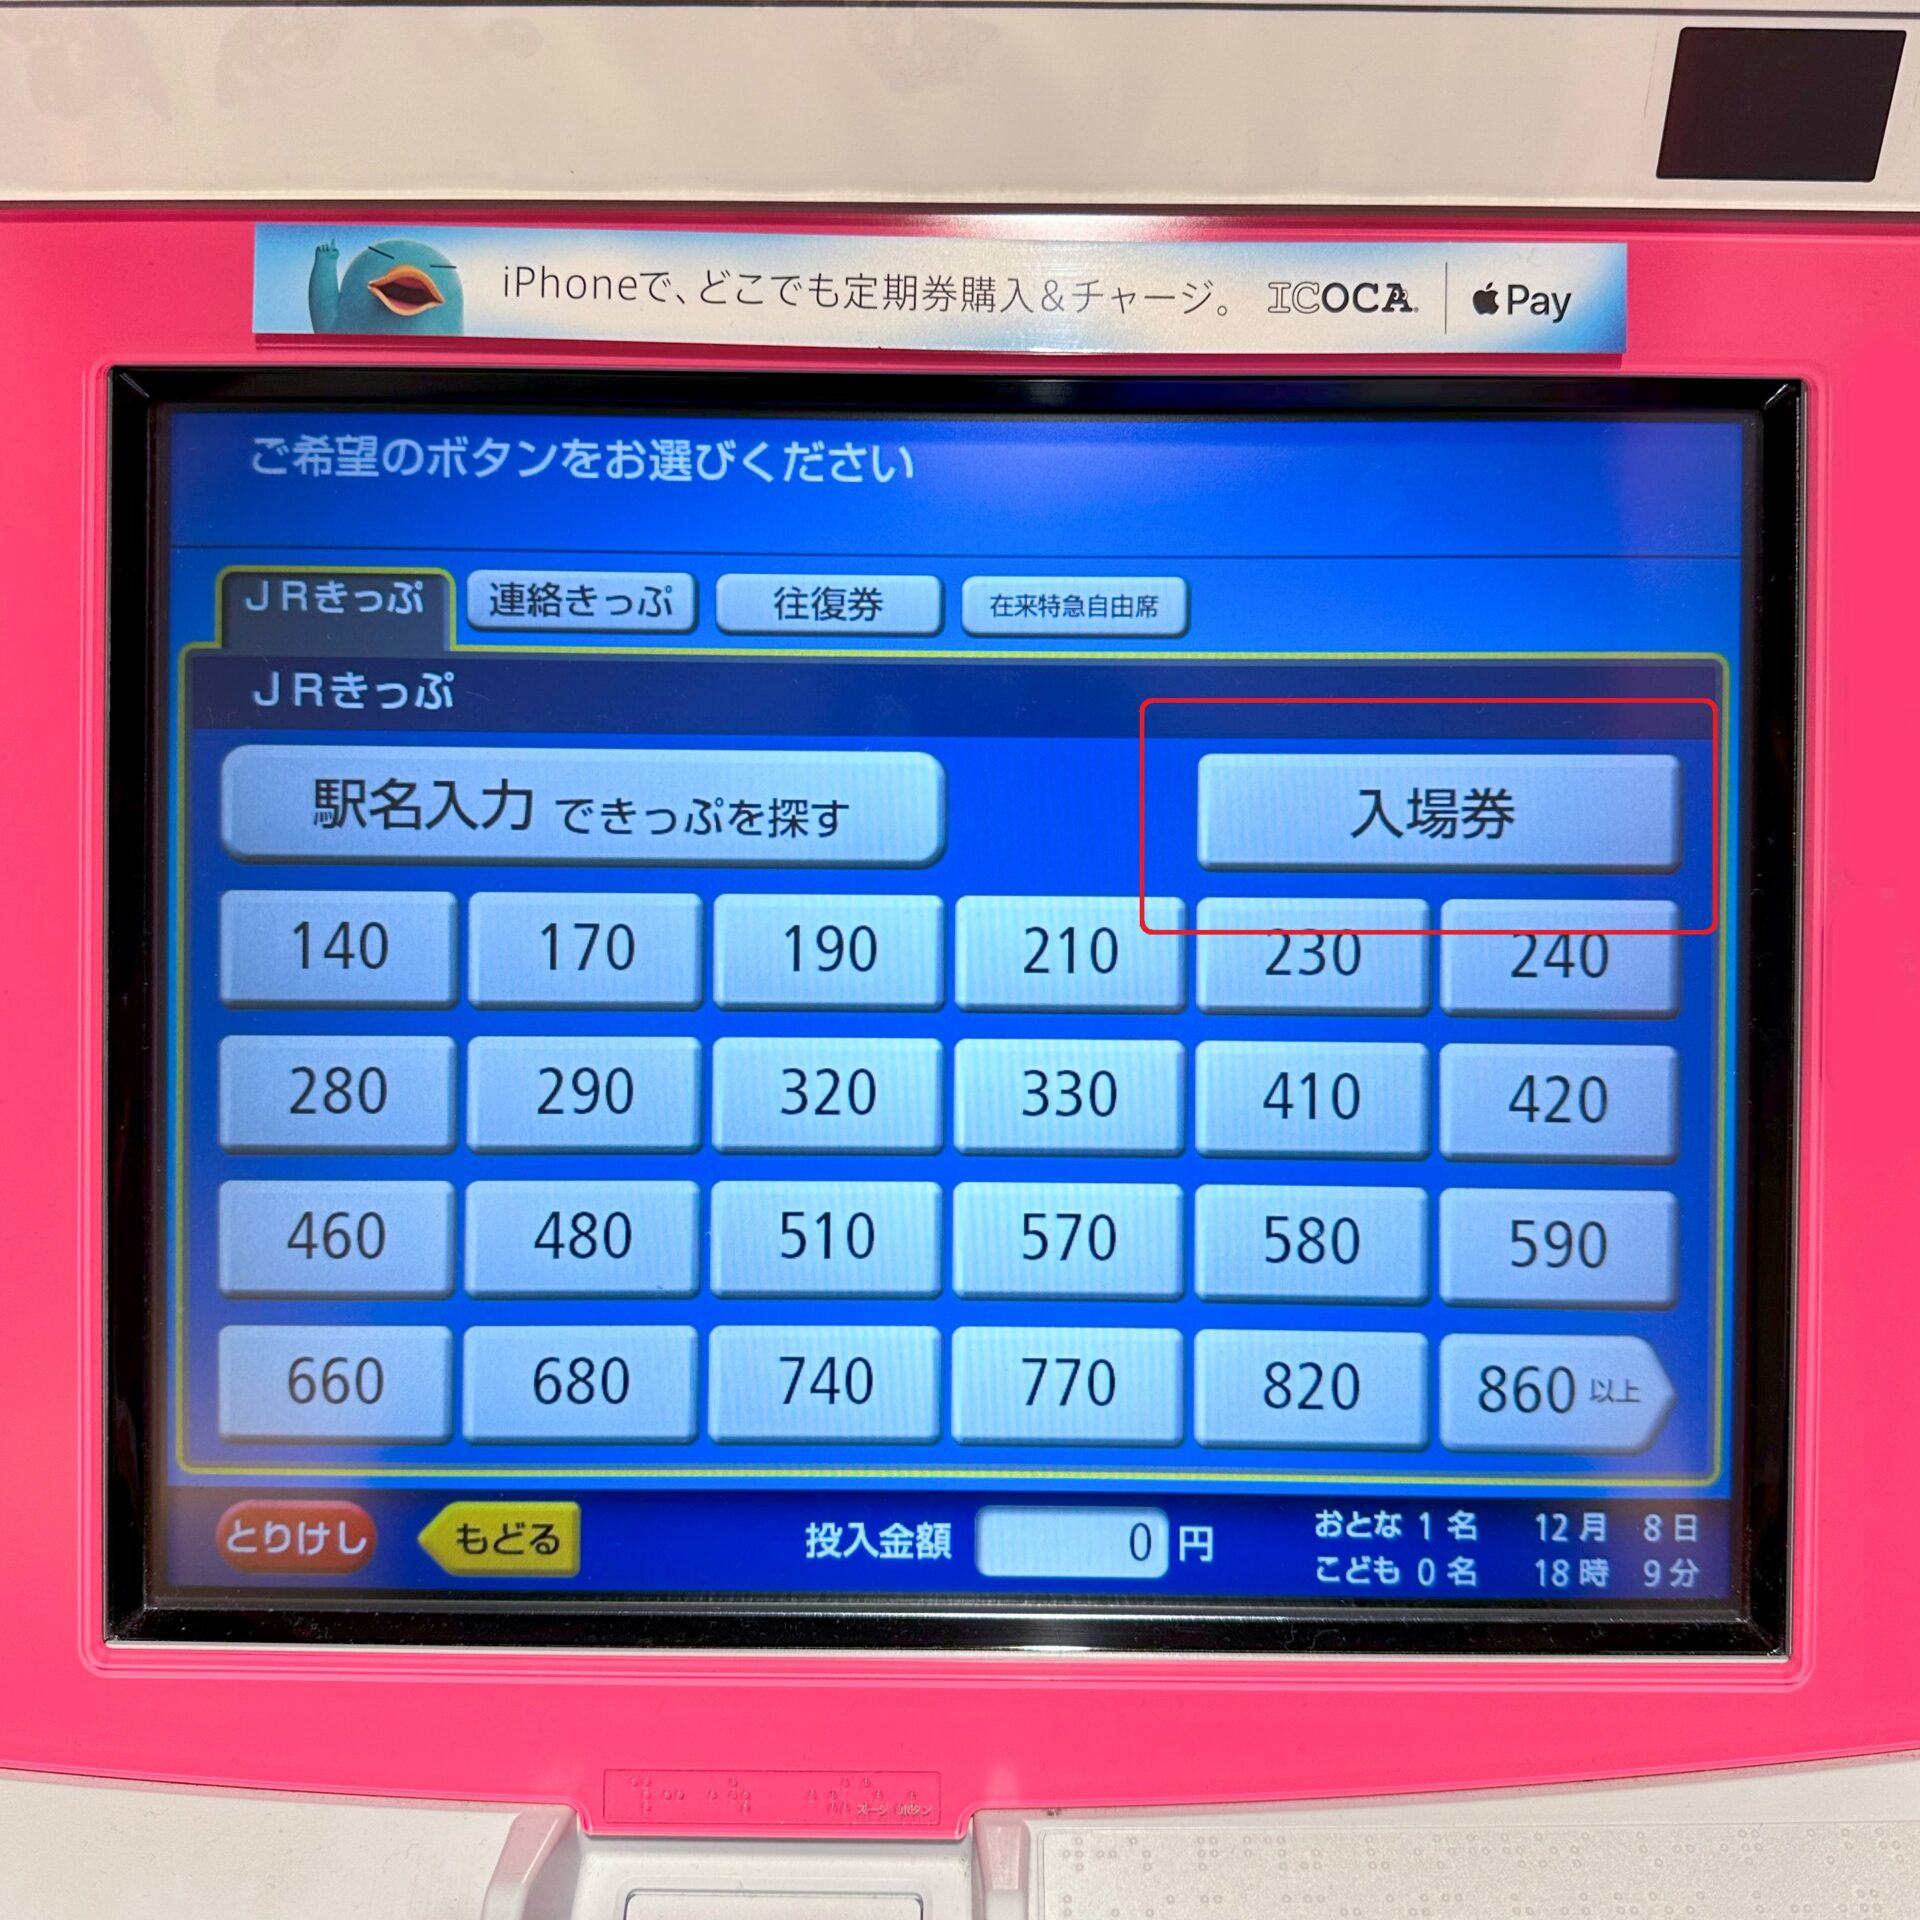 JR西日本近距離きっぷ券売機操作画面